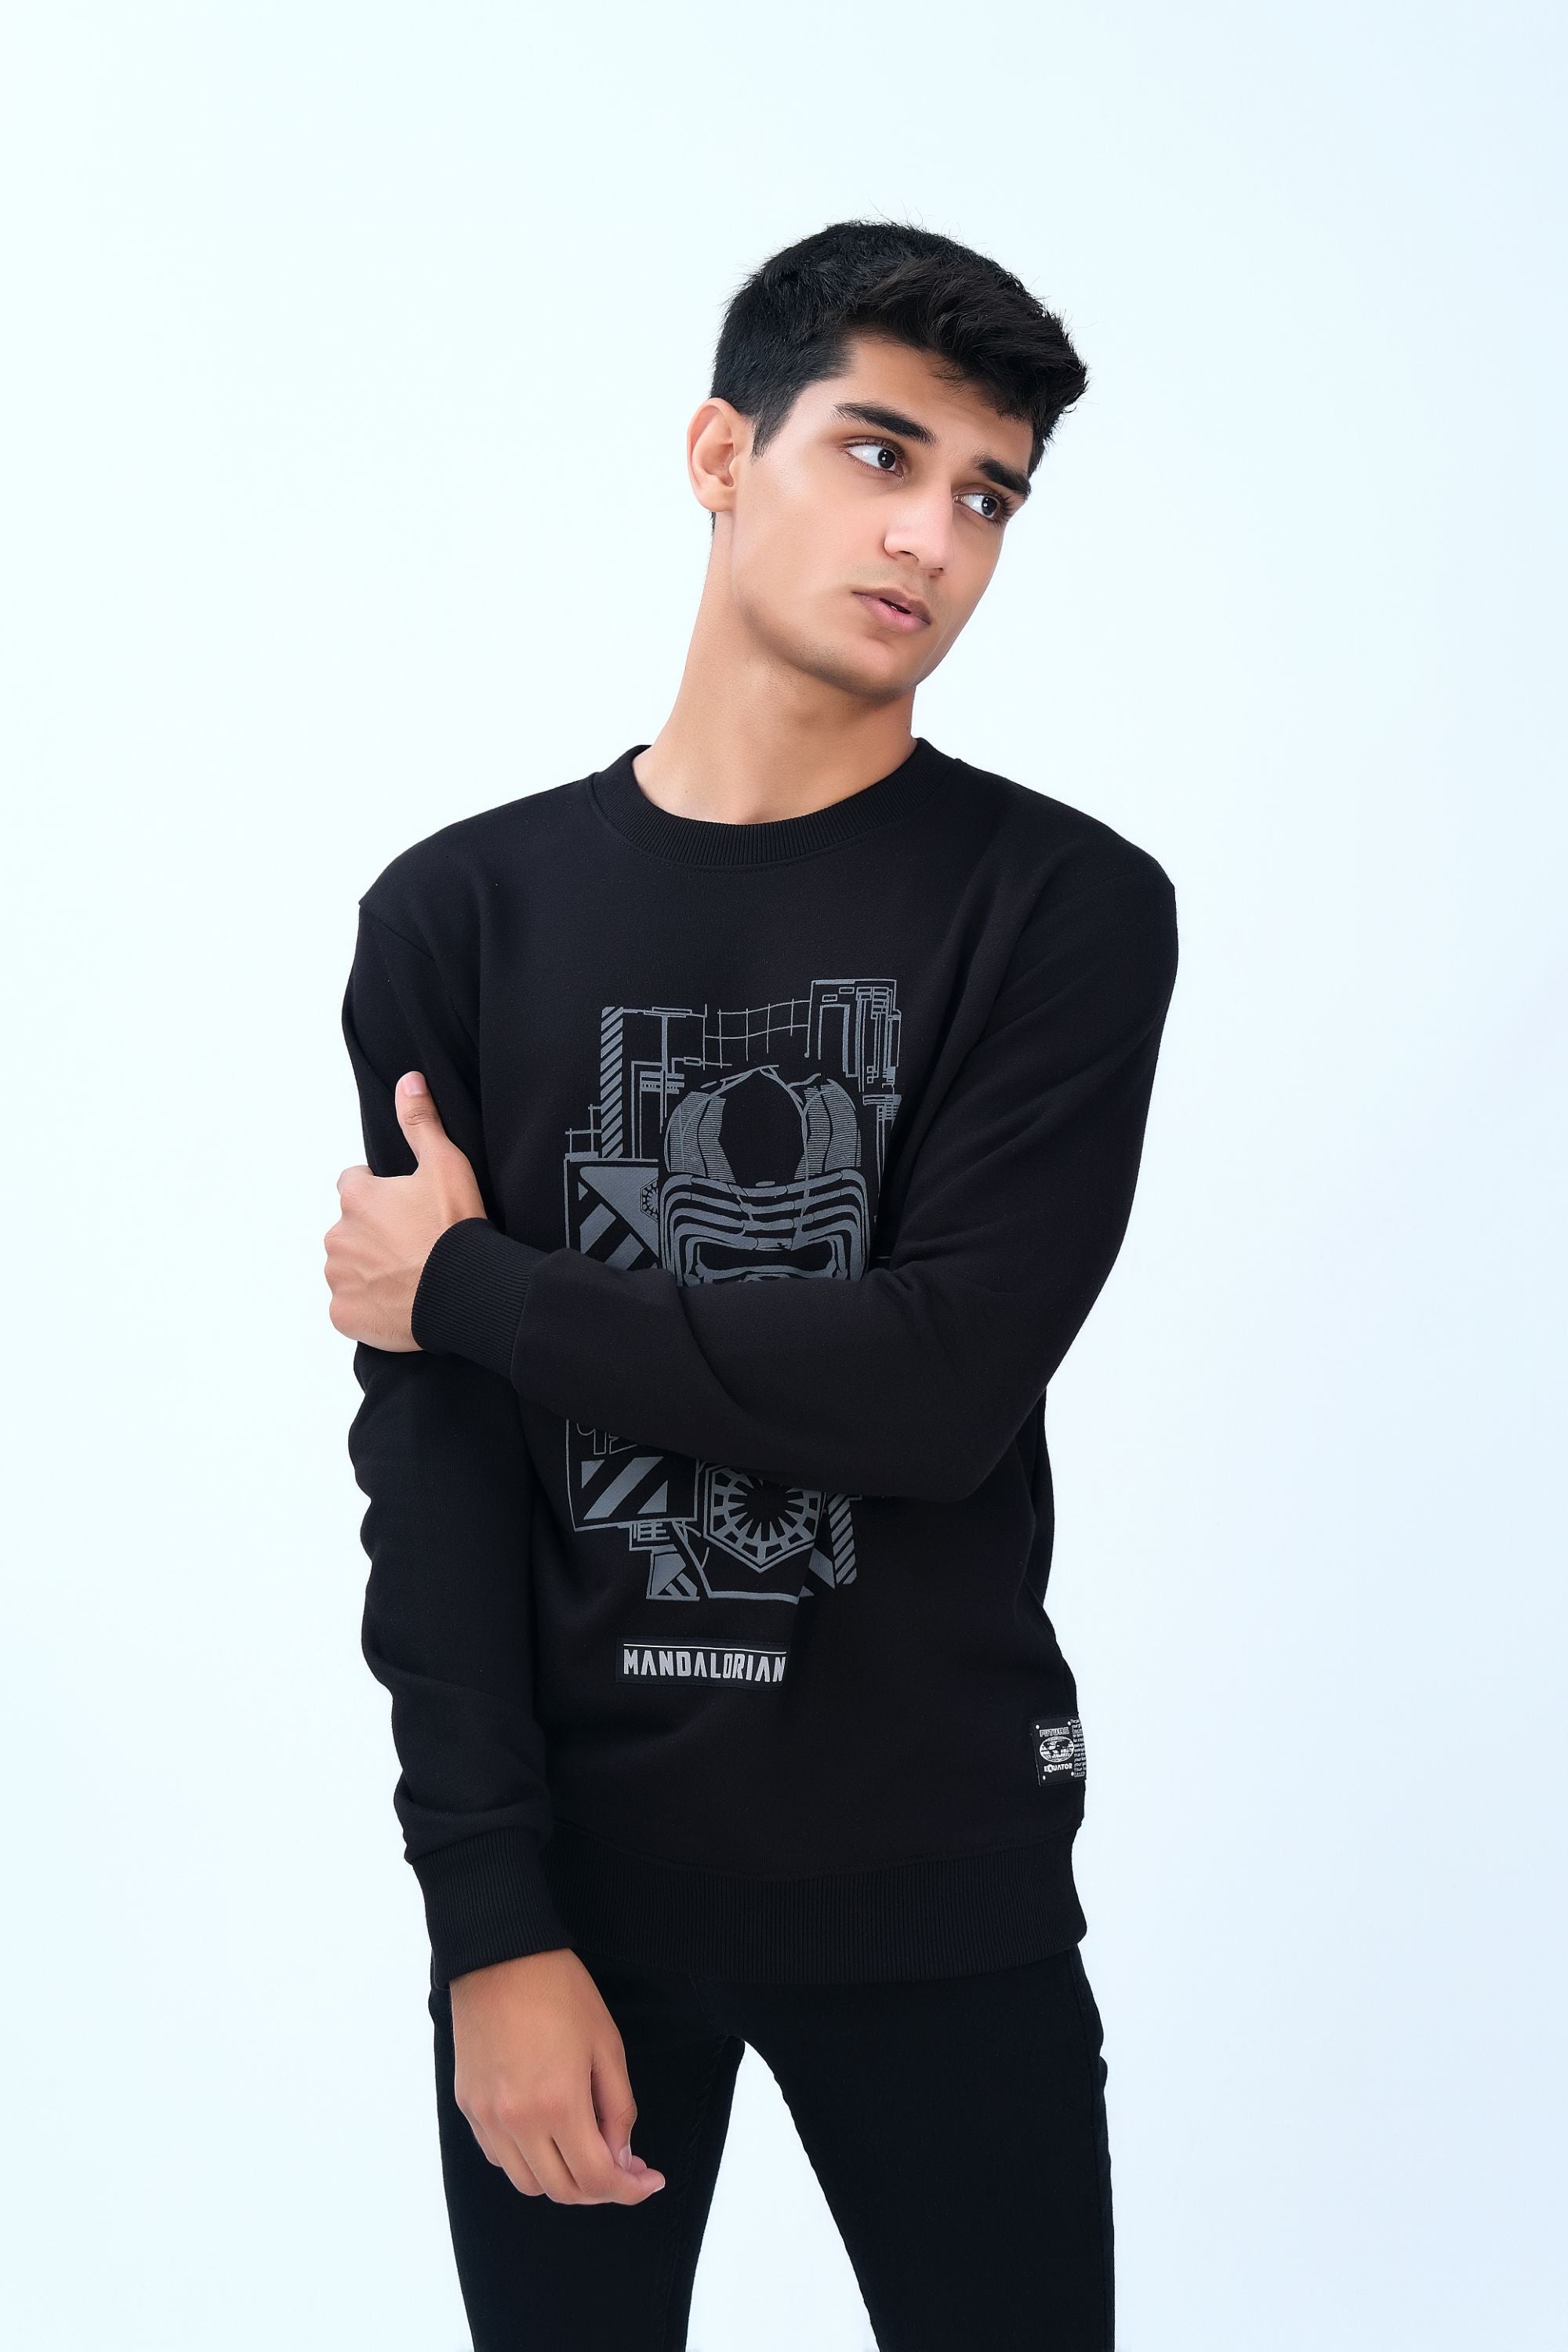 Super Comfy Black Sweatshirt